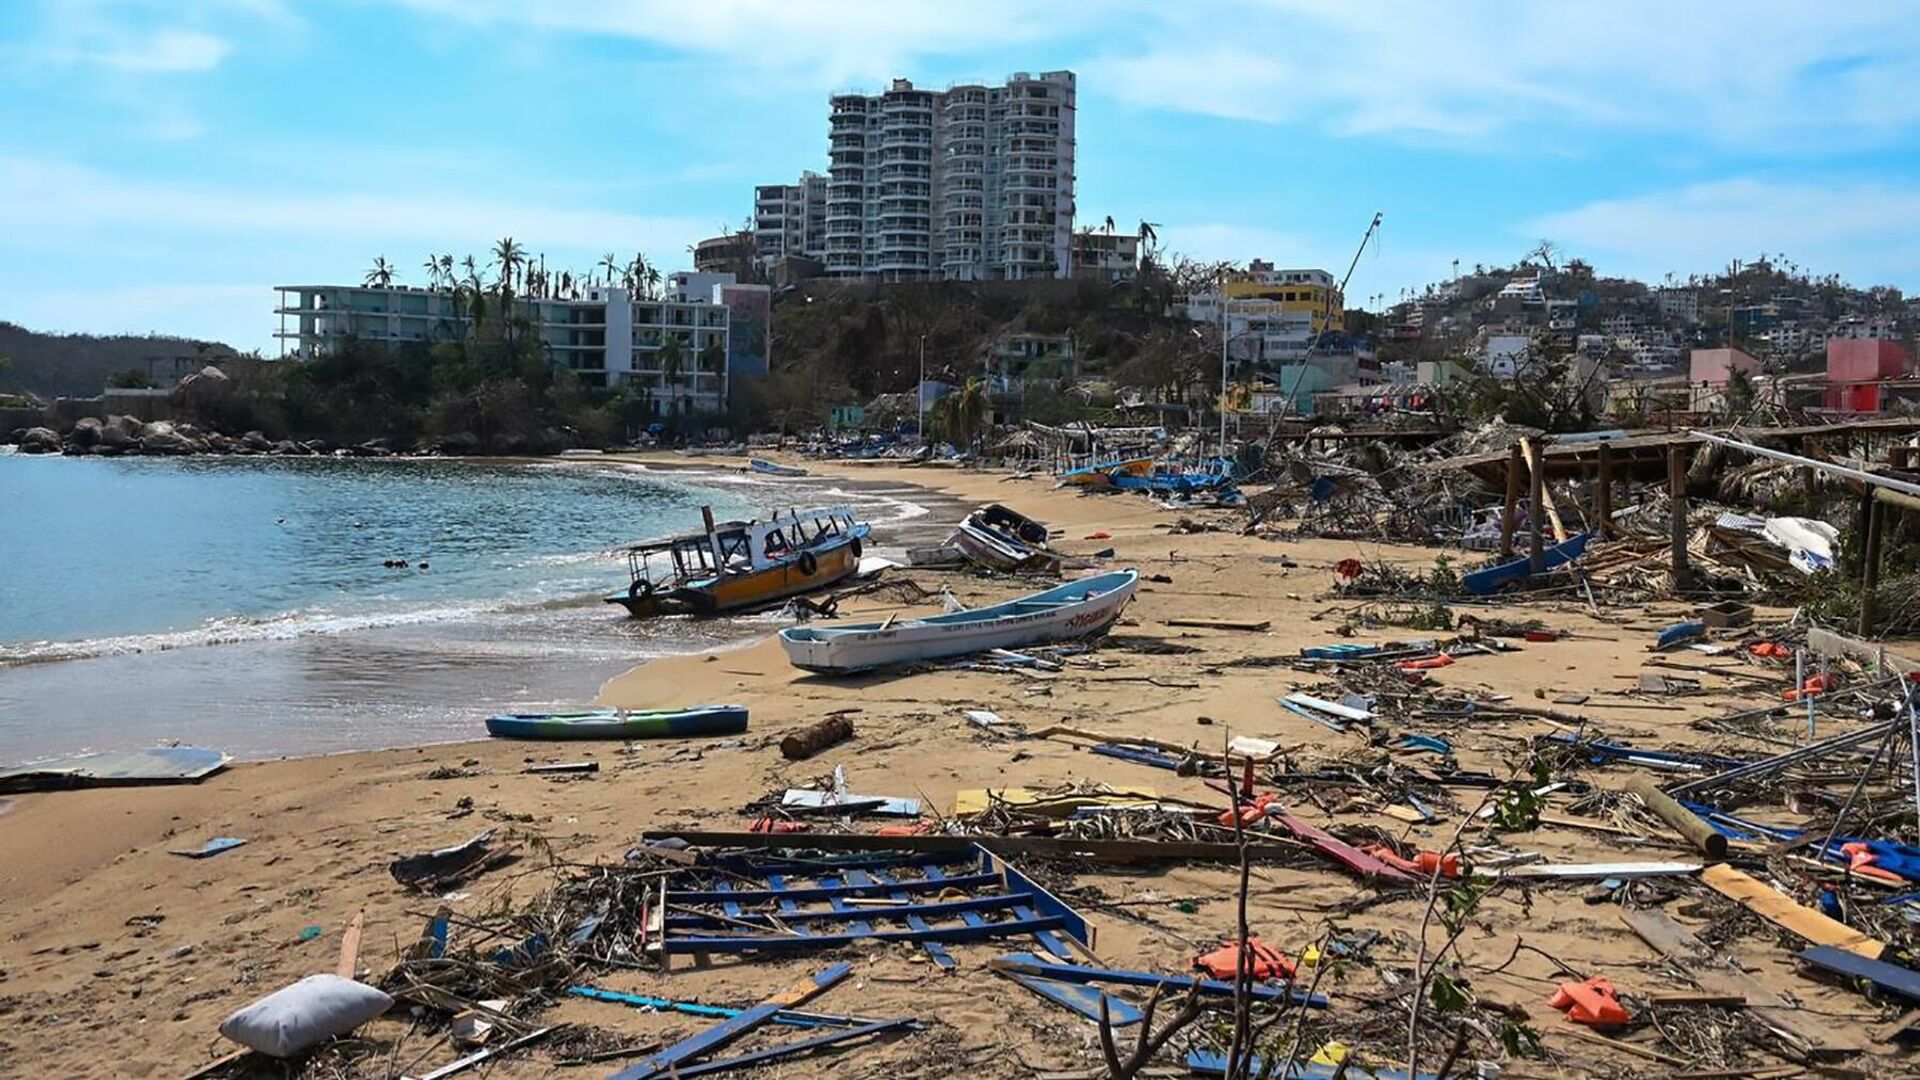 Termina declaratoria de emergencia en Acapulco por impacto de huracán “Otis” | Línea Directa